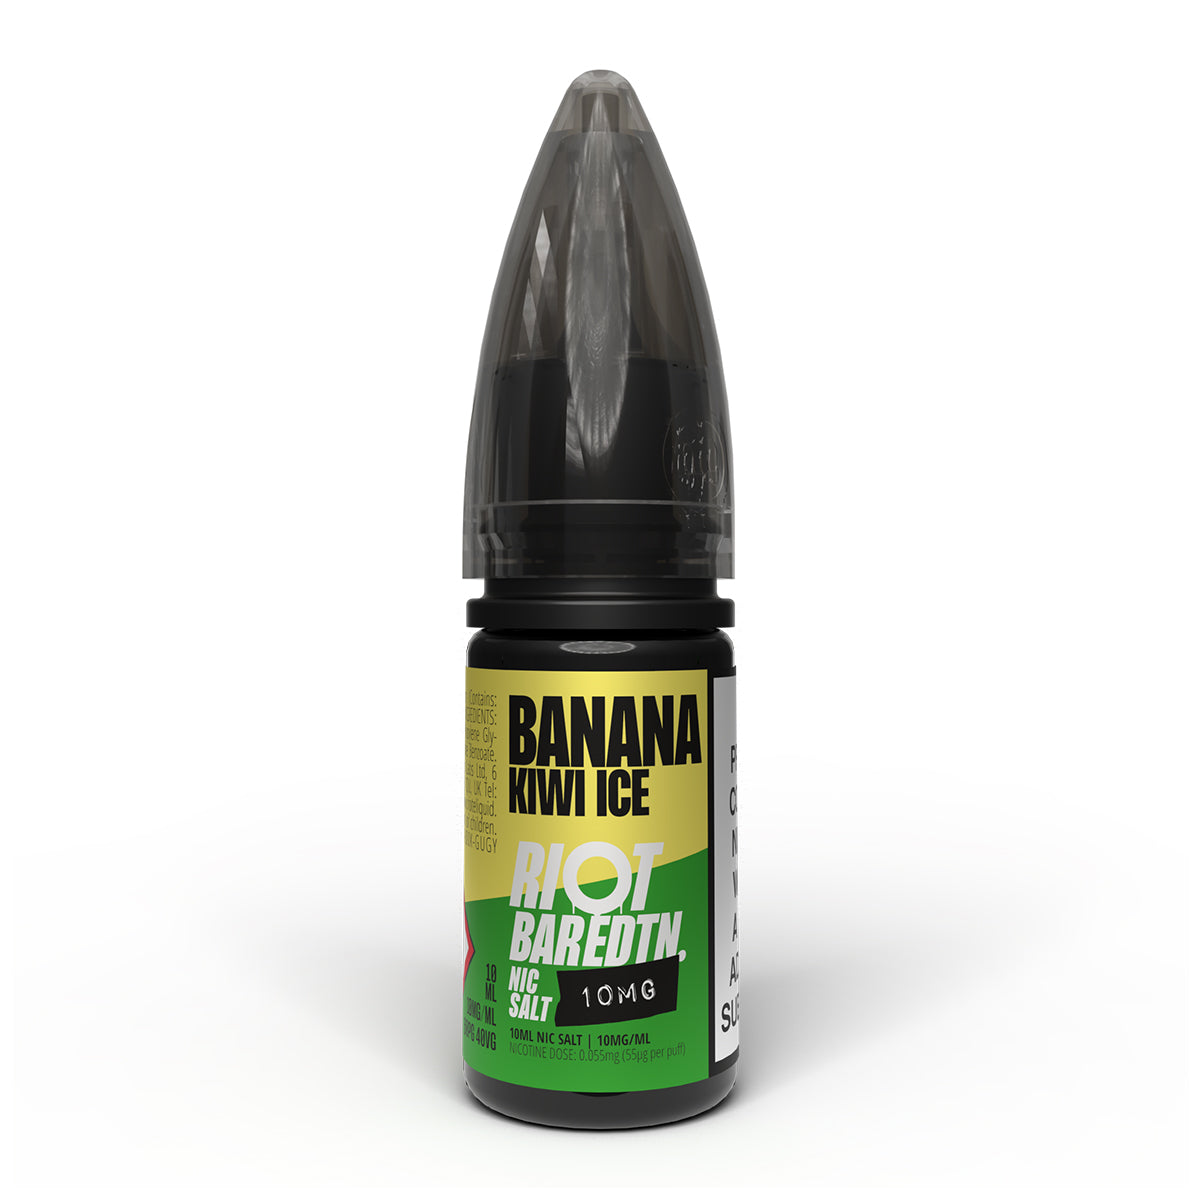 Banana Kiwi Ice 10ml Nicotine Salt 10mg by Riot Bar Edtn